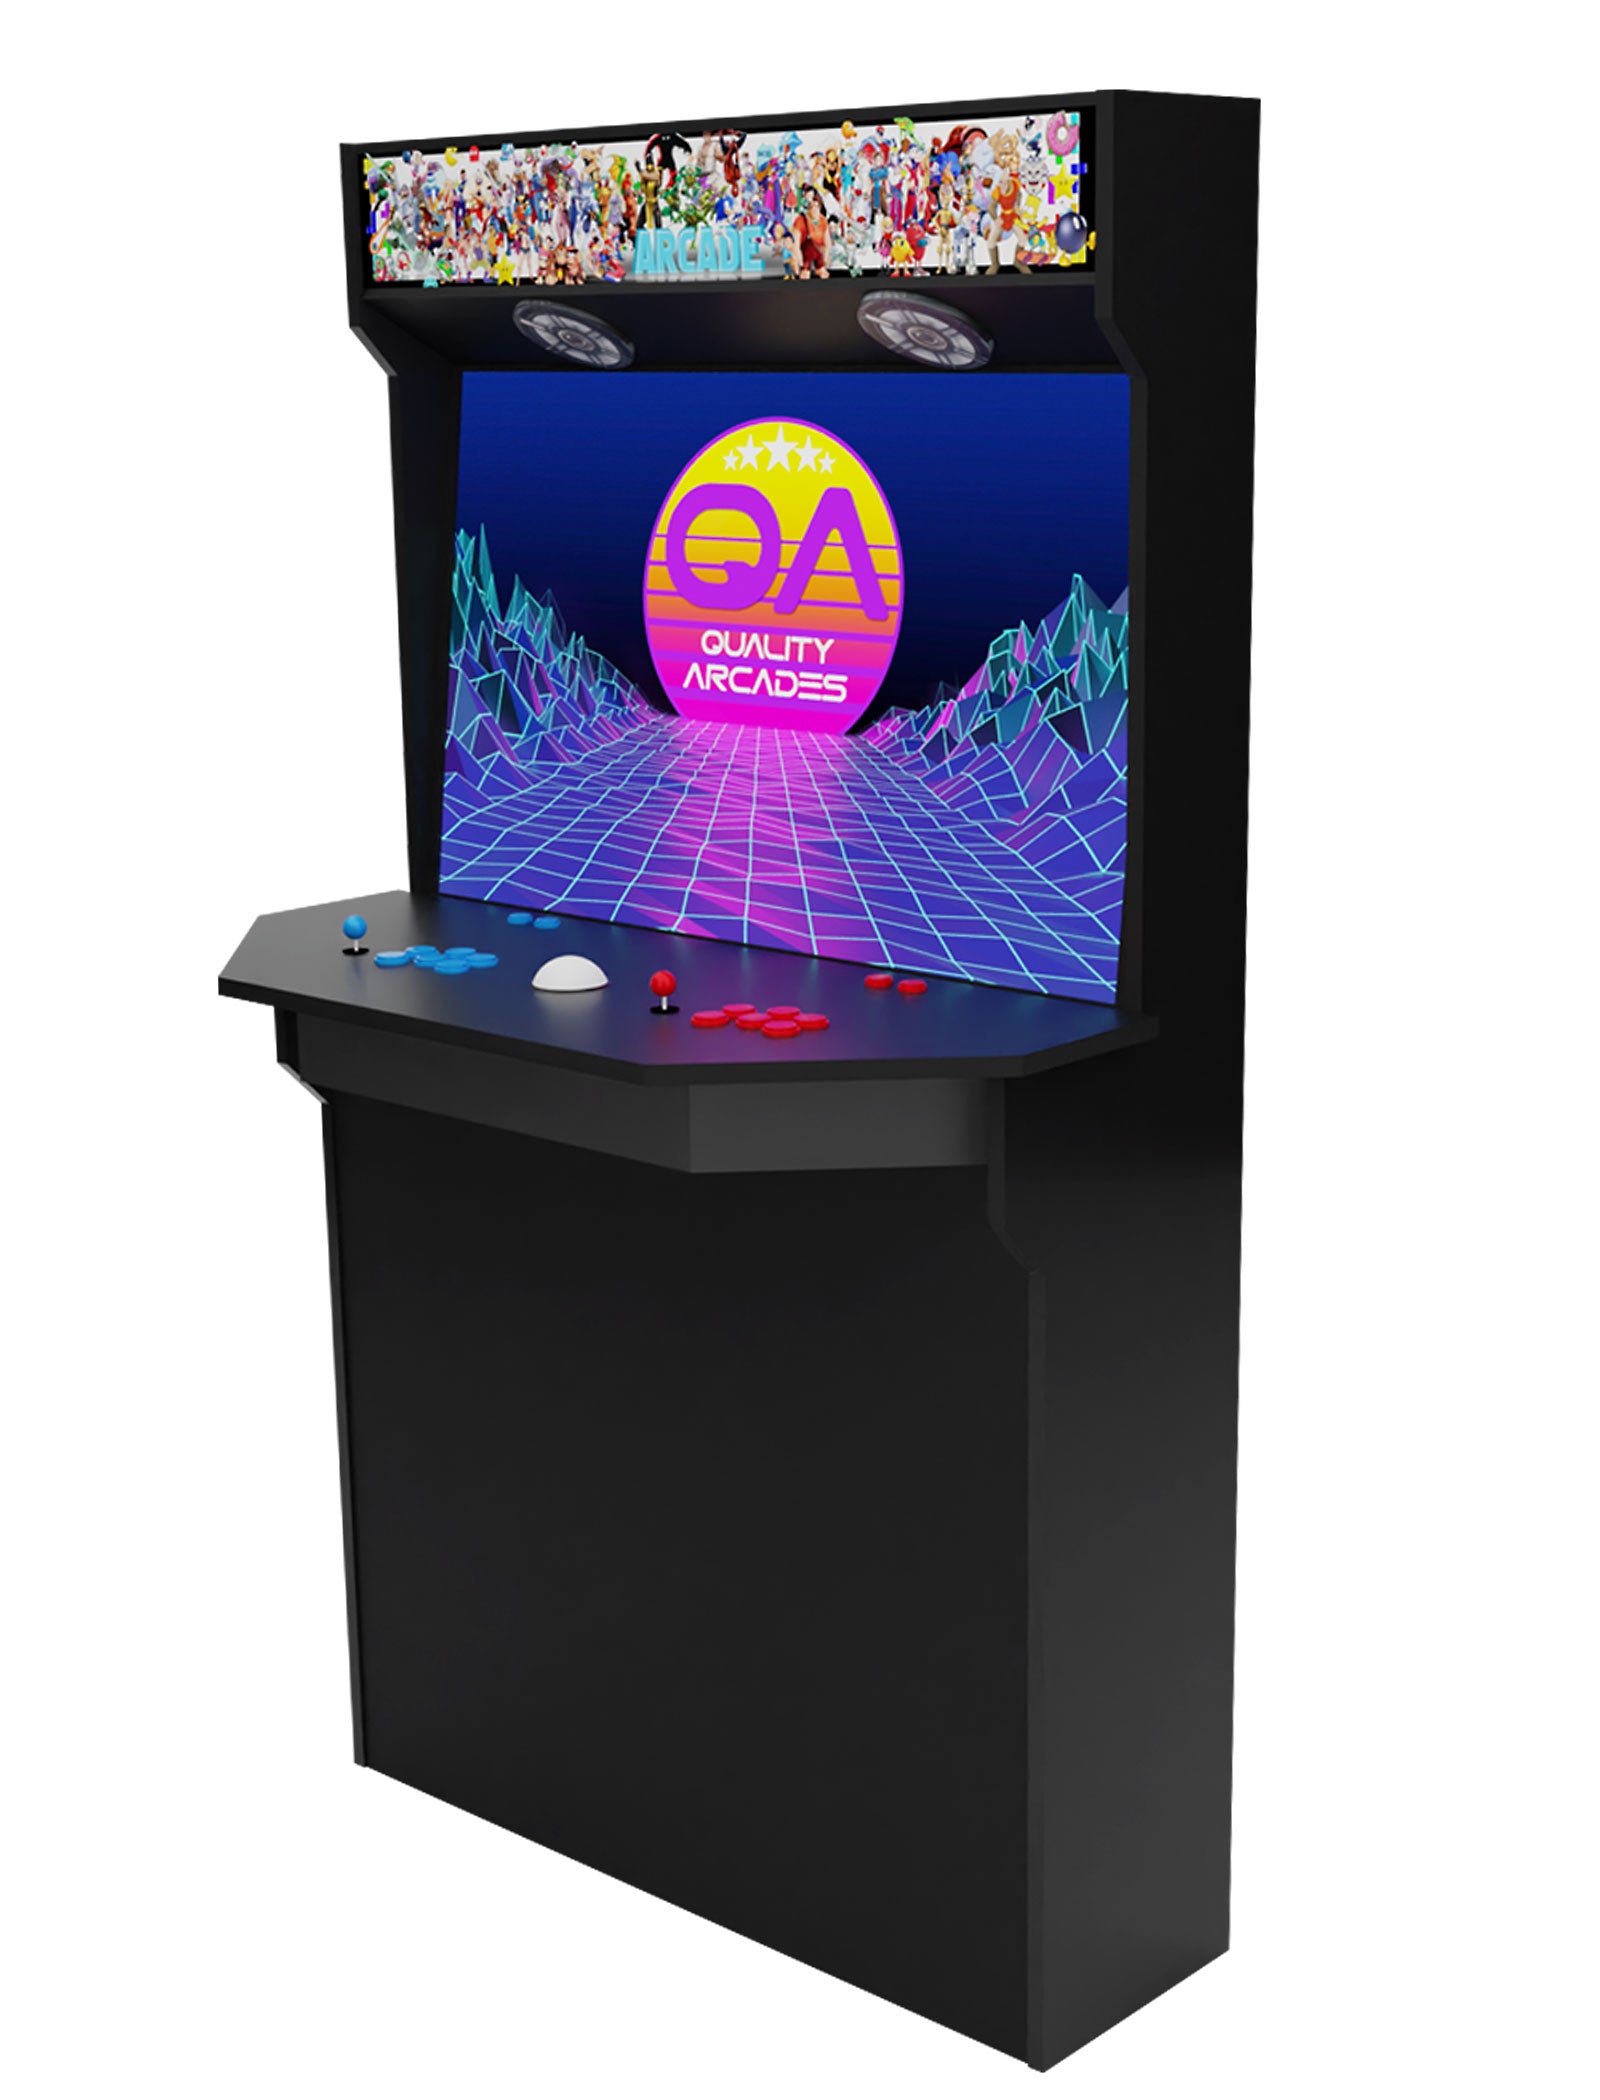 Hexacade™ Arcade Machine (Basic)